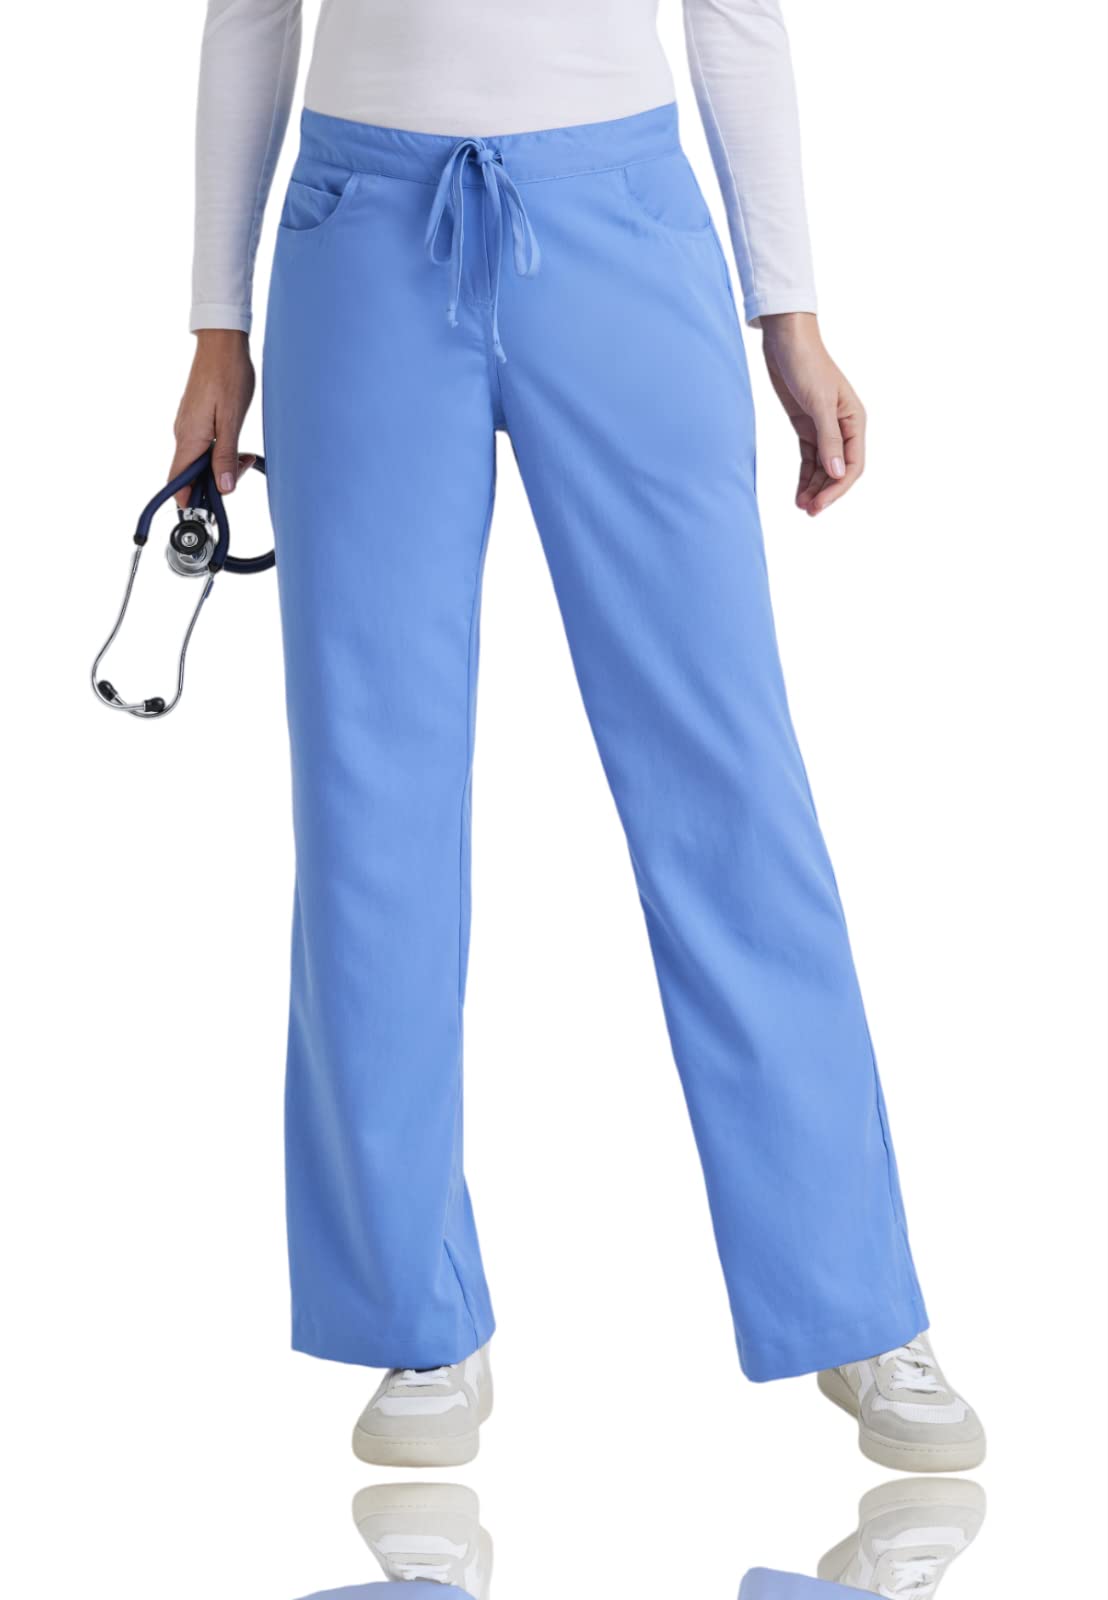 BARCO Grey's Anatomy Scrubs Riley OP-Hose für Damen, elastischer Taillenbund, mittelhohe Taille, ausgestelltes Bein, Damen-OP-Hose, himmelblau, Large Hoch